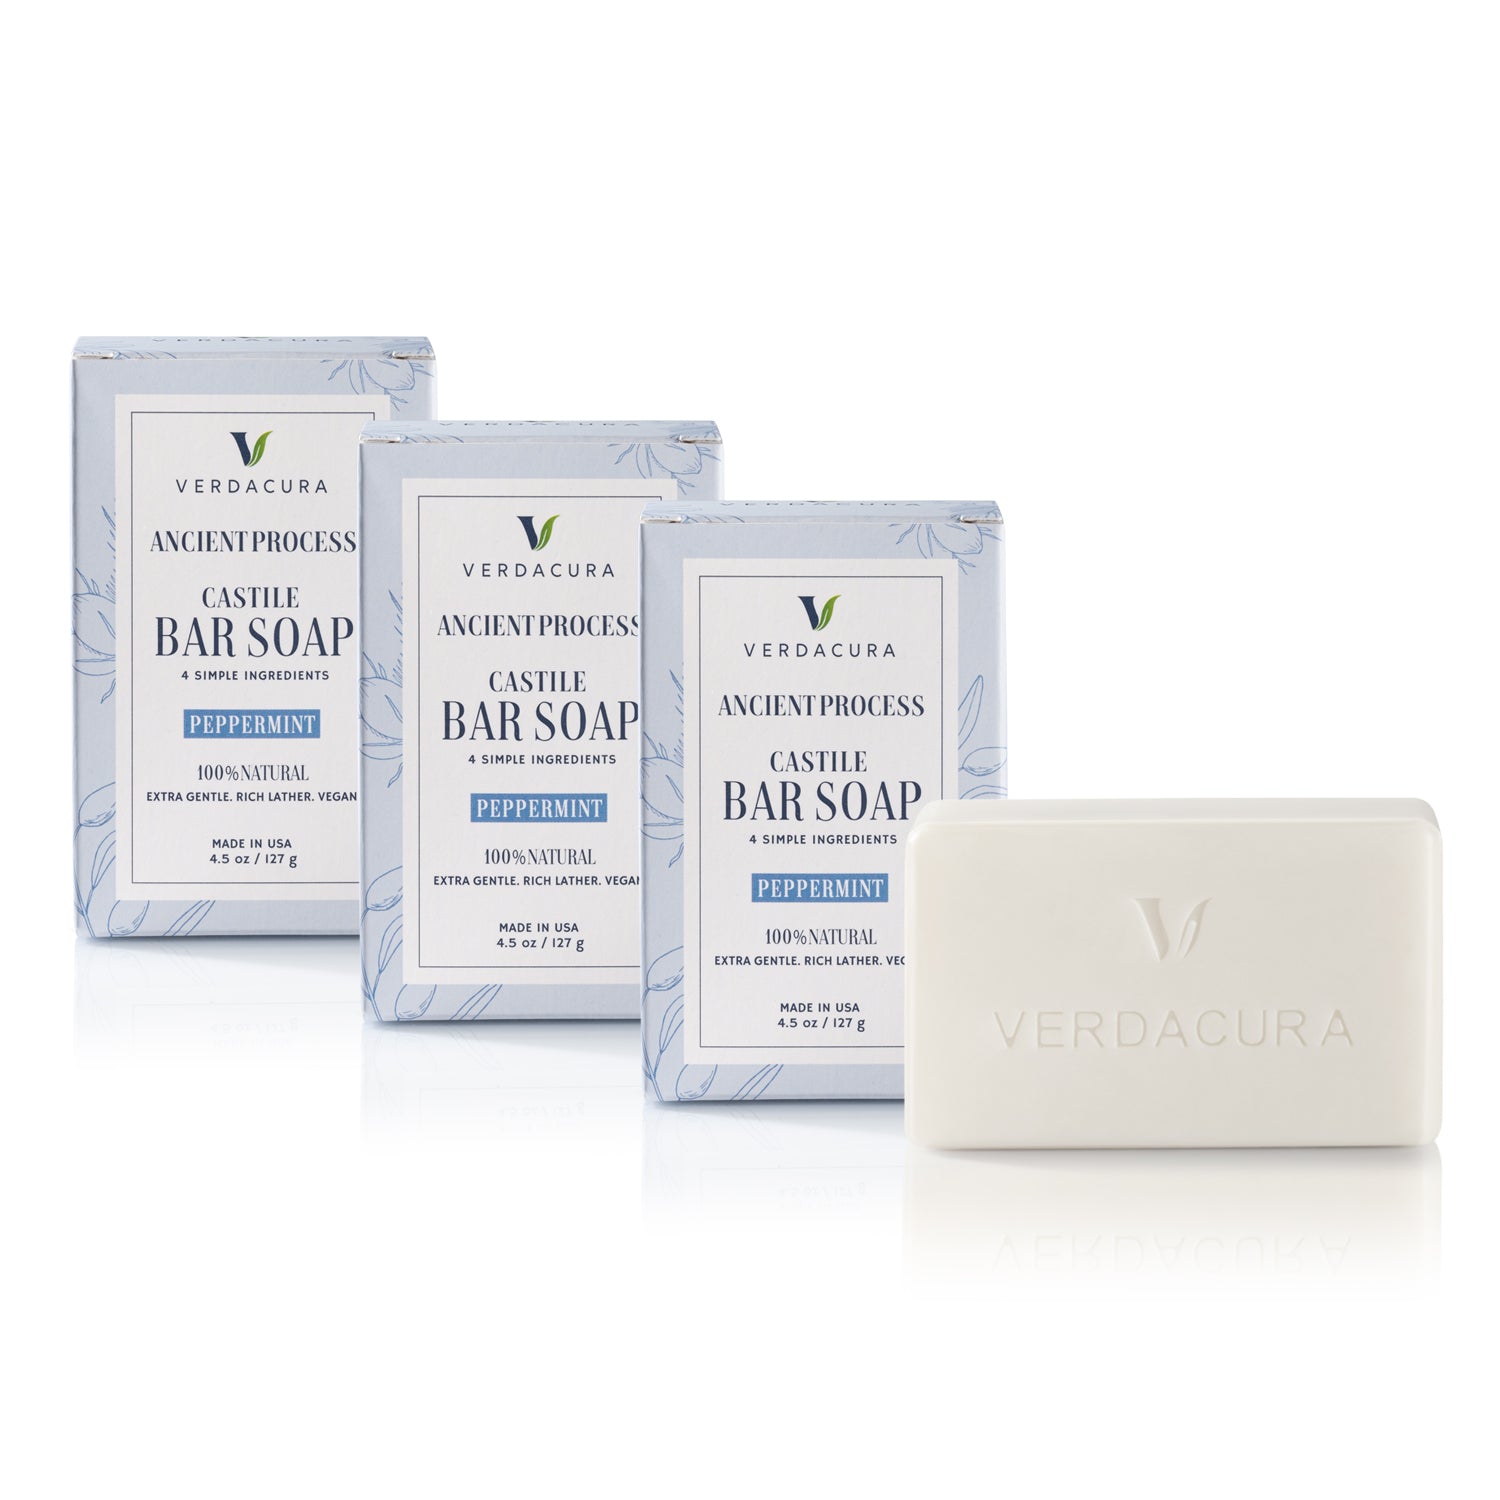 ANCIENT PROCESS CASTILE BAR SOAP PEPPERMINT 3 PACK (4.5 OZ EACH) - Verdacura